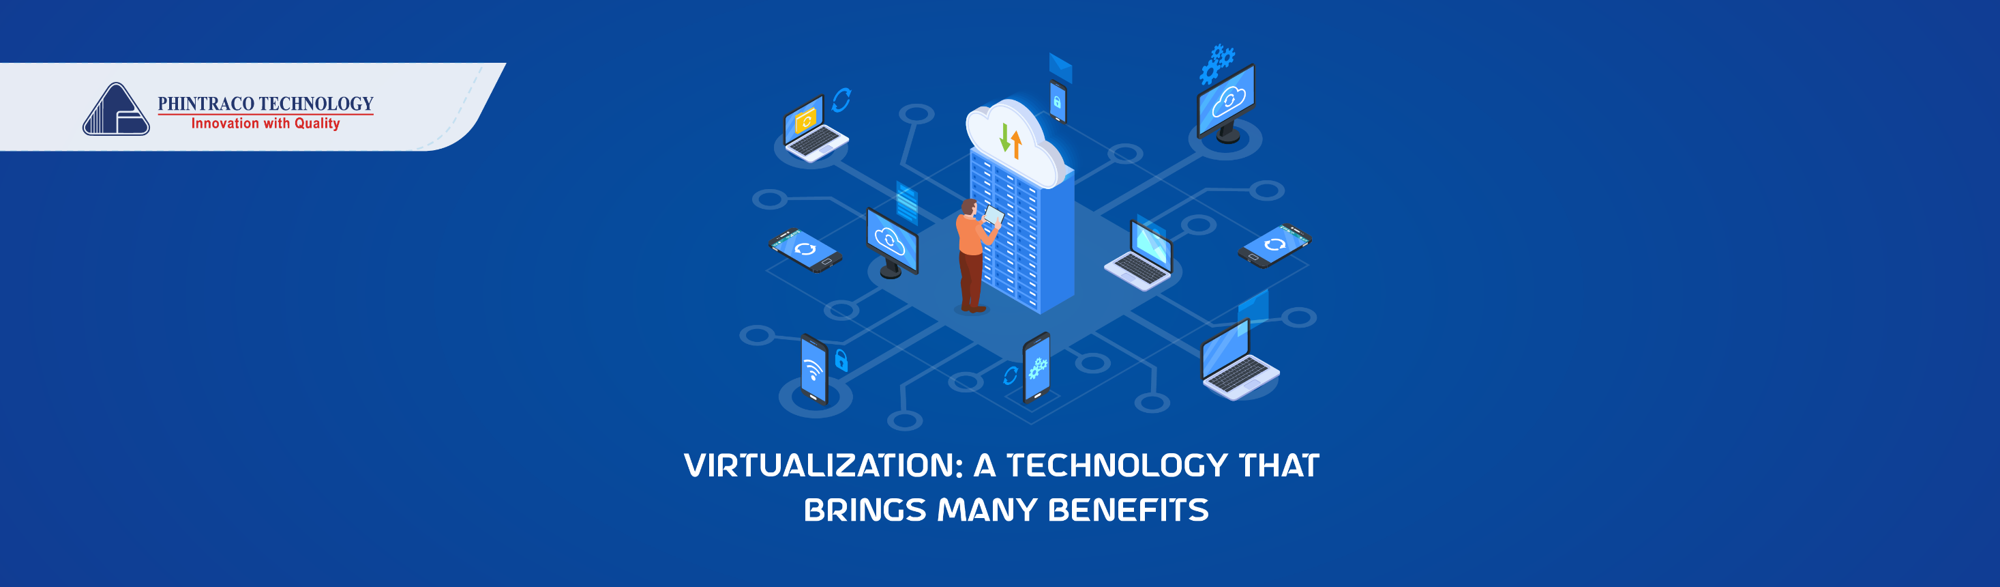 benefits virtualization